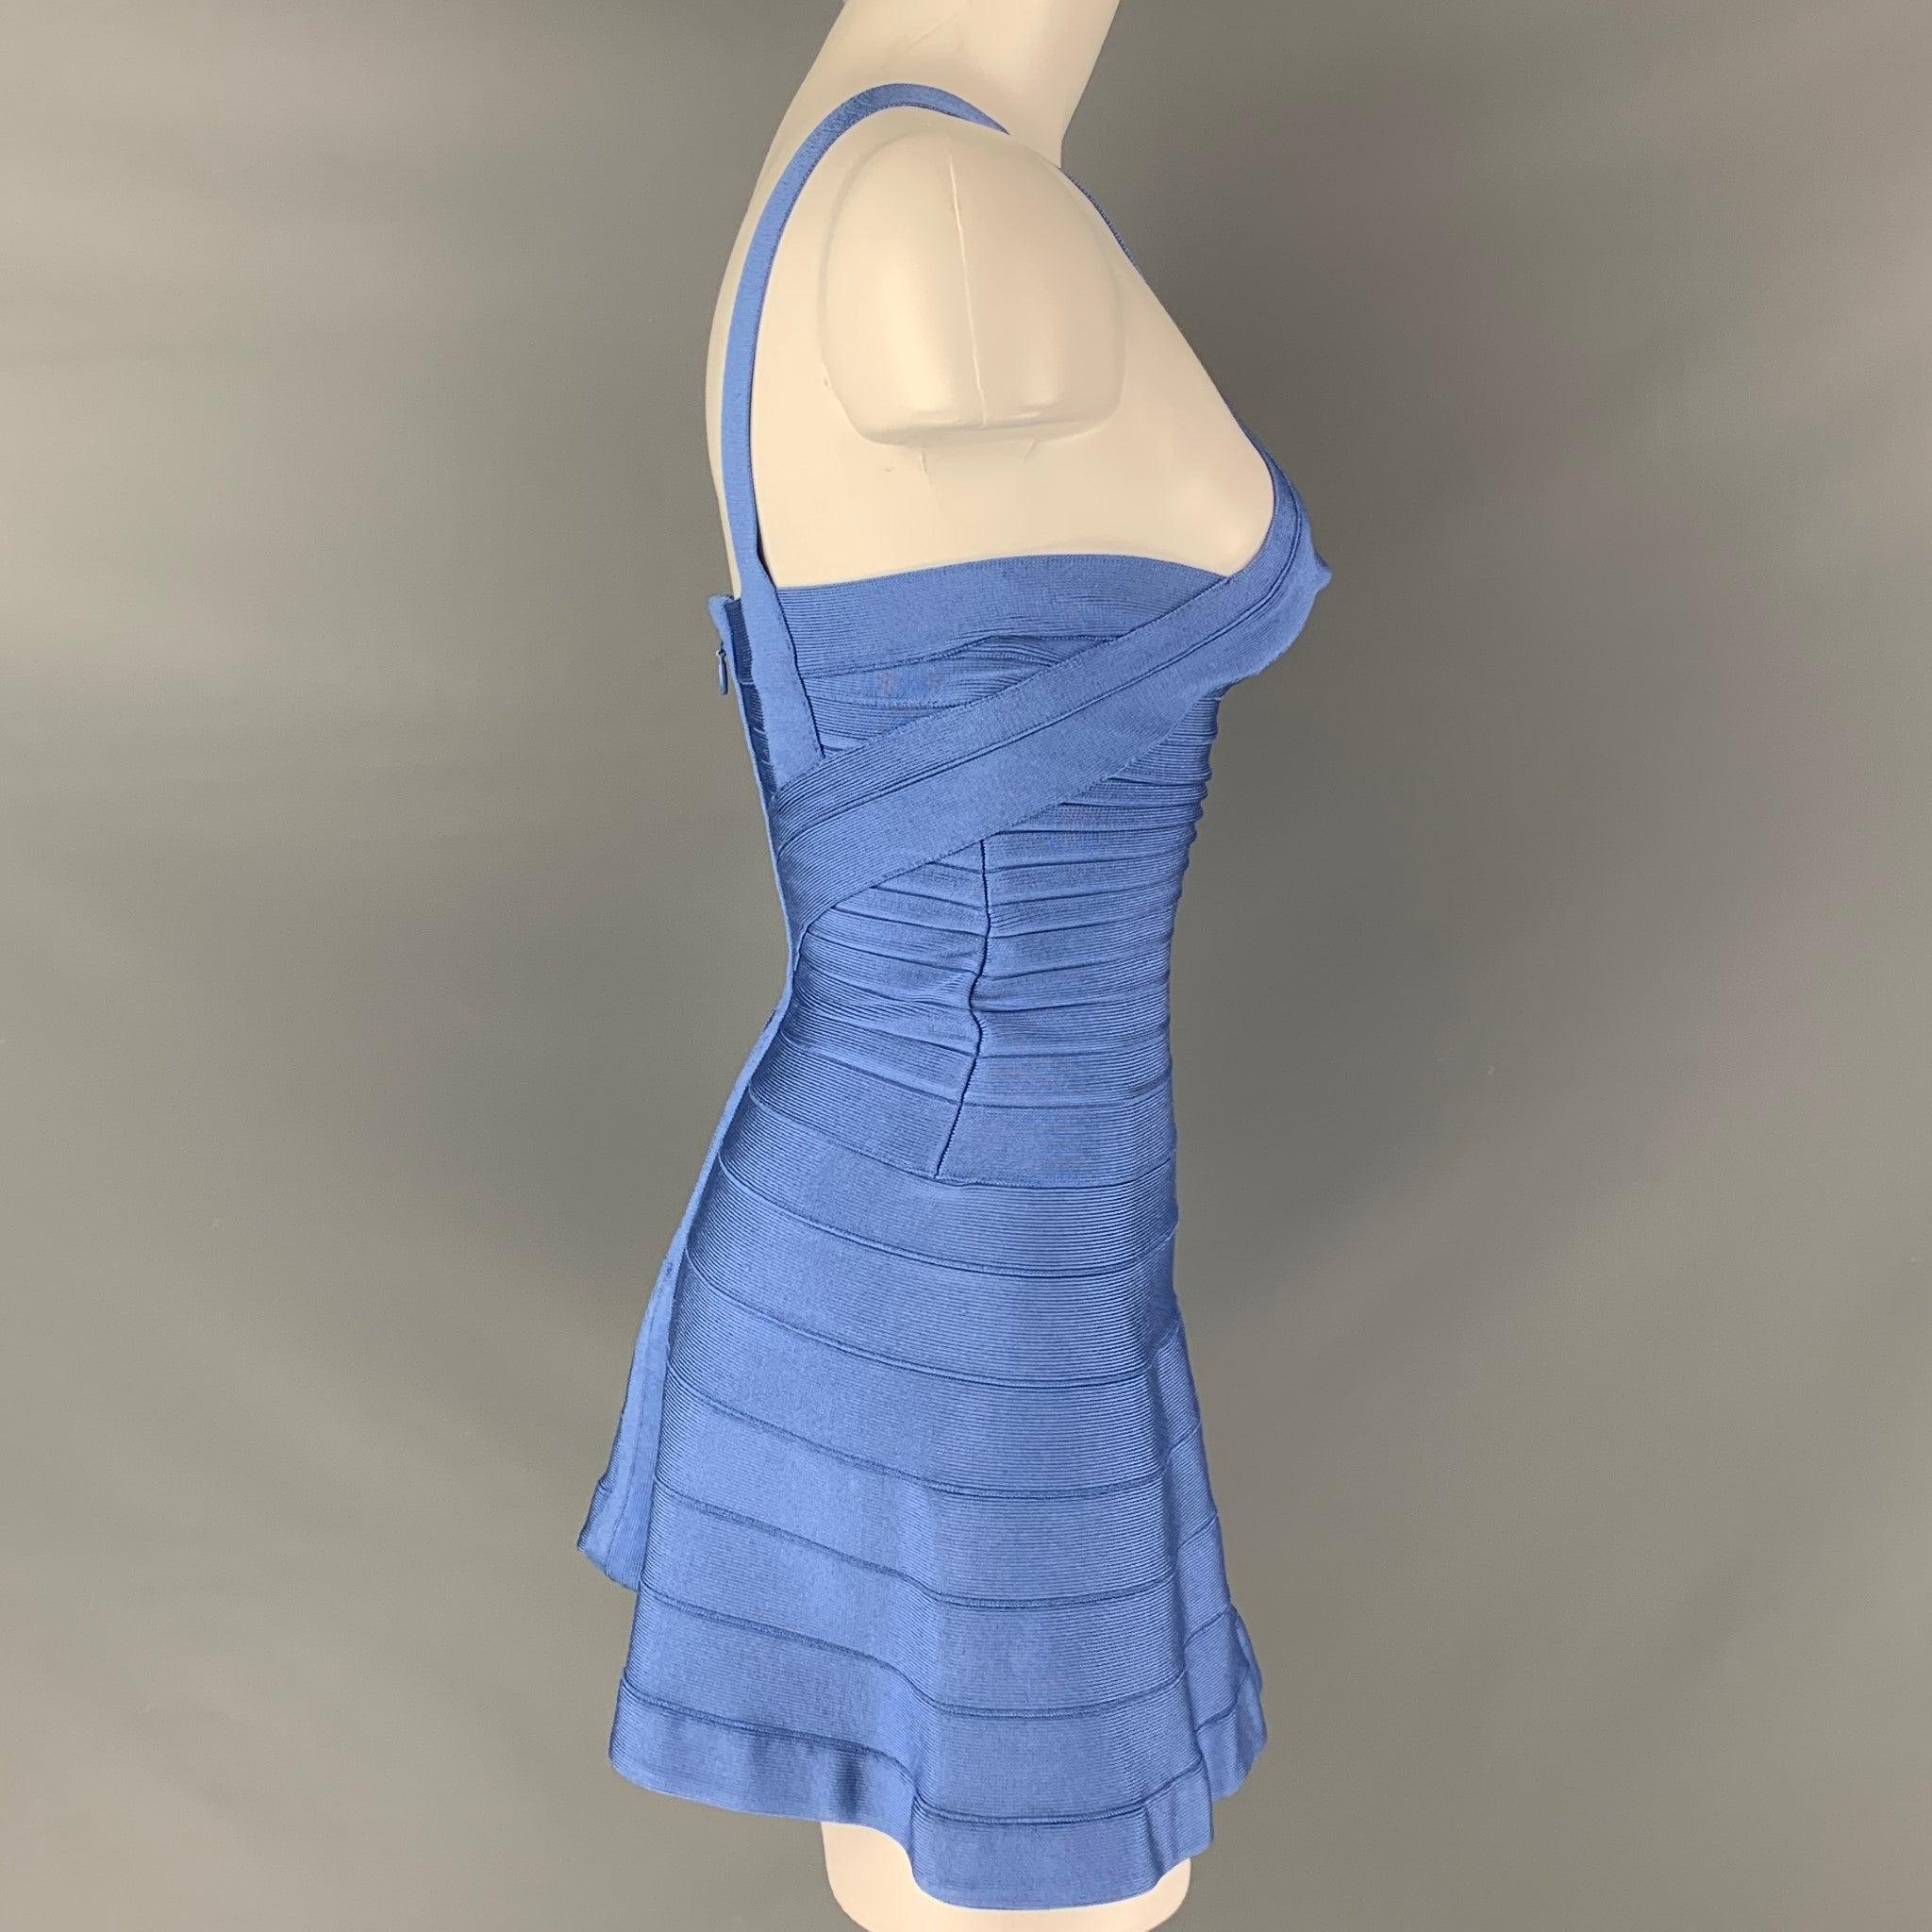 HERVE LEGER Cocktail-Minikleid aus blauem Viskose-Mischgewebe mit trägerlosem Ausschnitt, A-Linie und Reißverschluss am Rücken in gutem, gebrauchtem Zustand.
 Wie es ist. Das Kleidungsstück wurde verändert. 
 

 Markiert:  XXS 
 

 Abmessungen: 
 